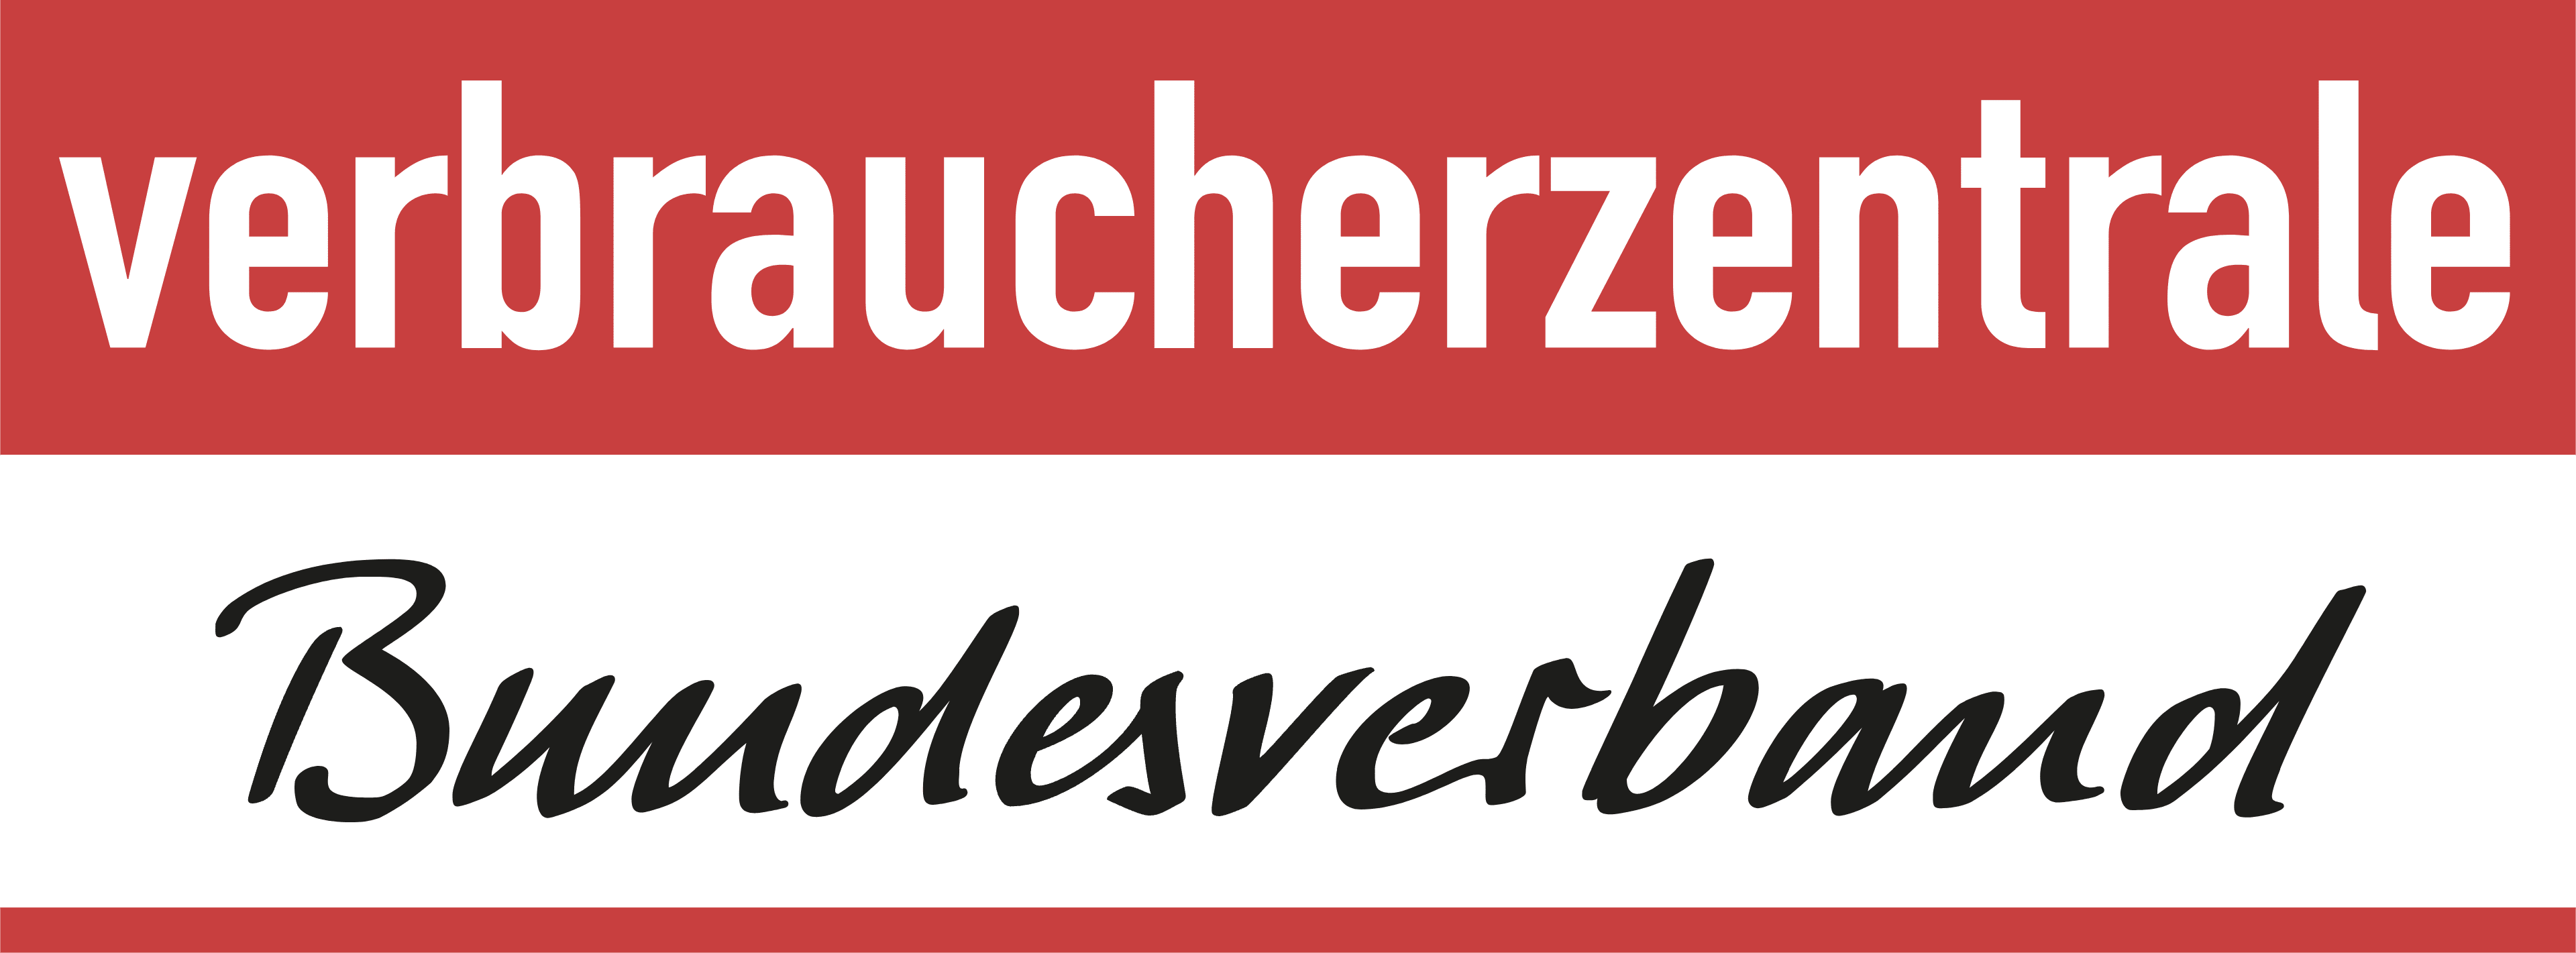 Verbraucherzentrale Bundesverband logo